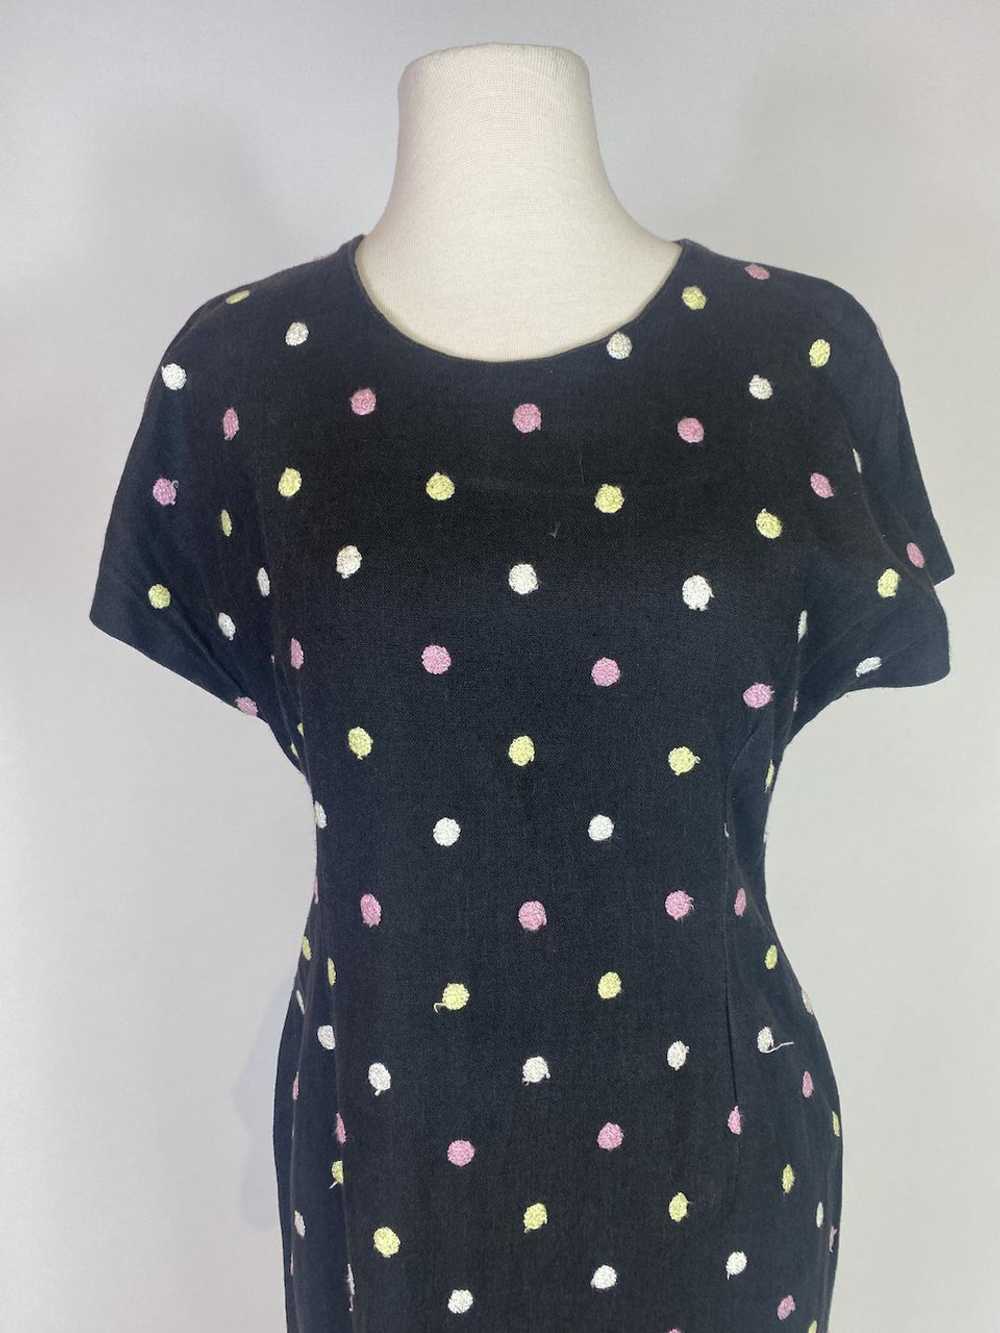 1960s Black Polka Dot Dress - image 2